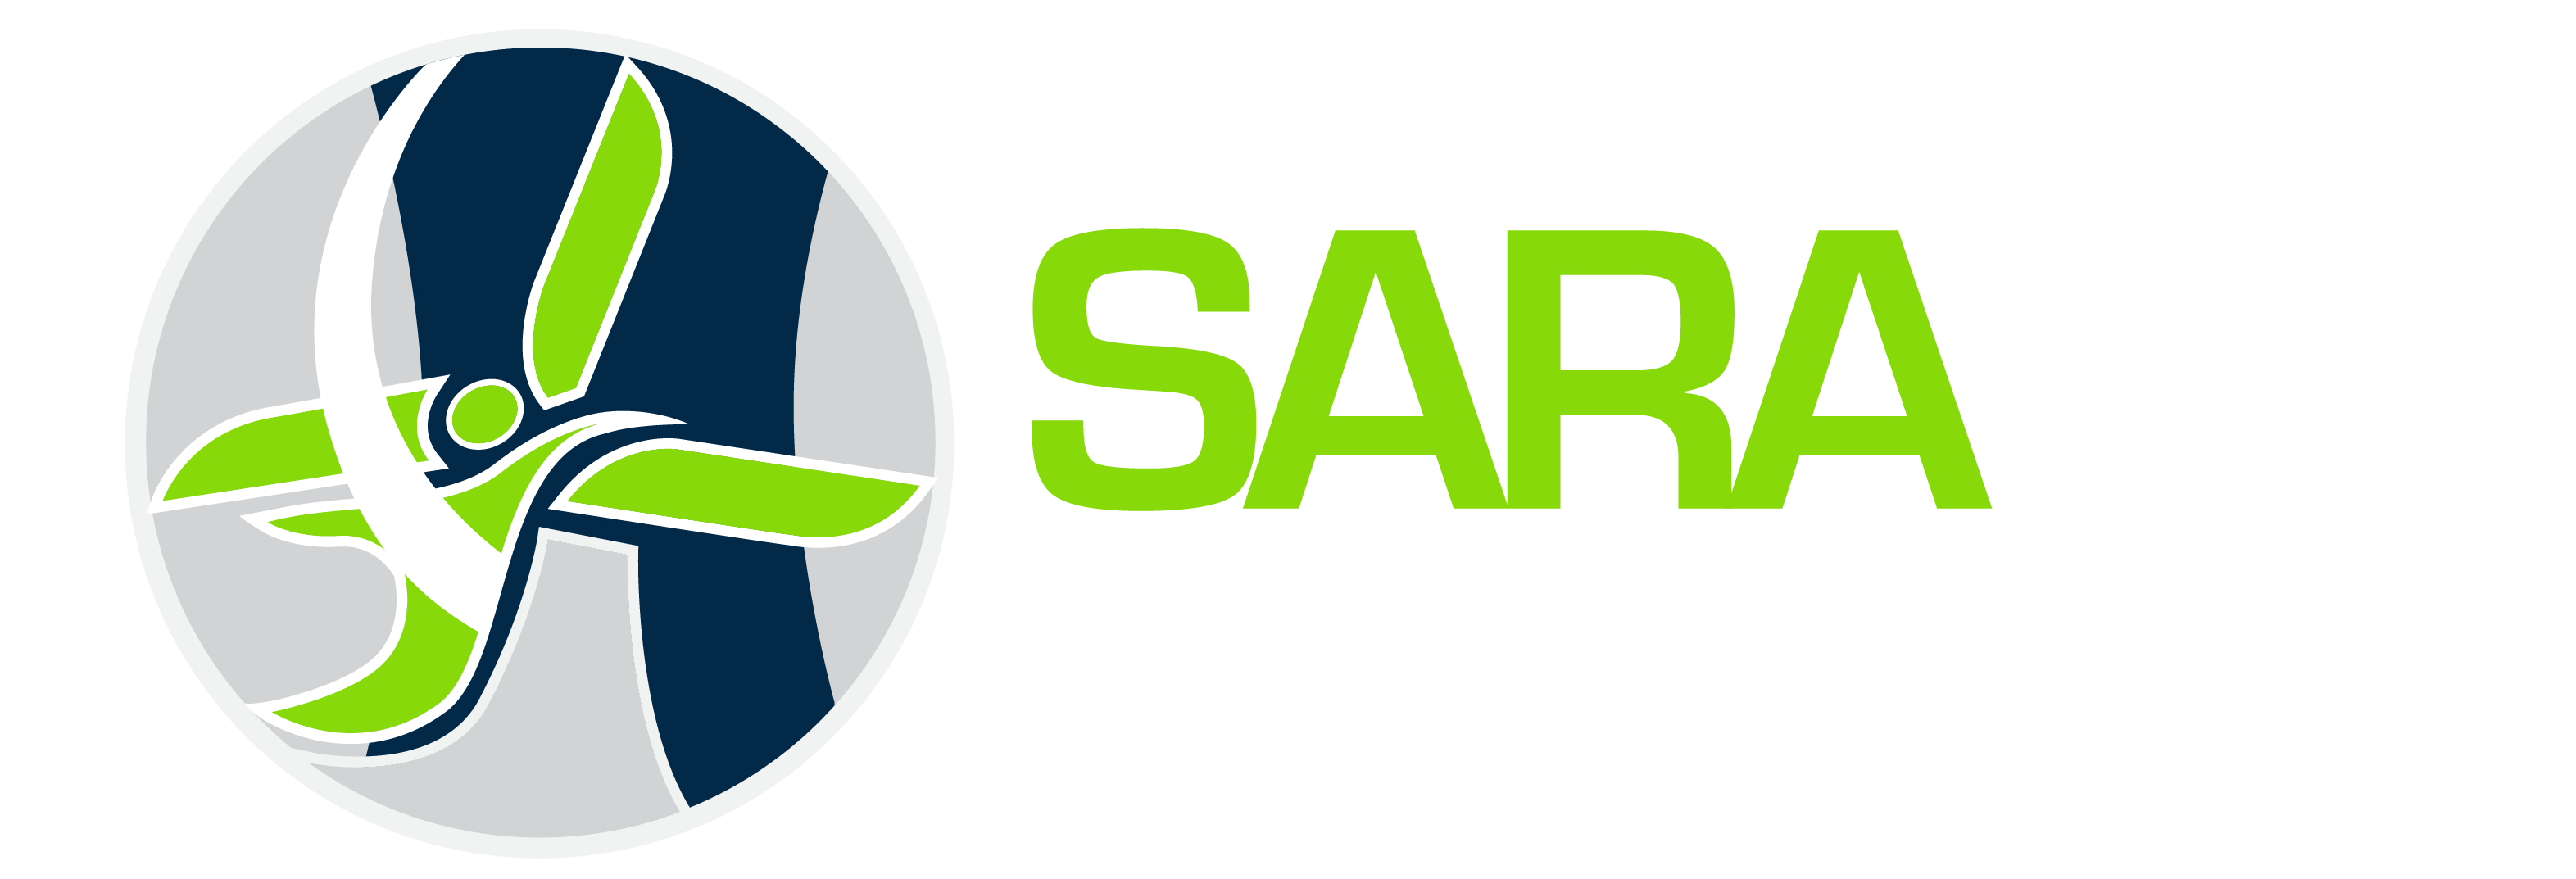 SARA Rope Access Global